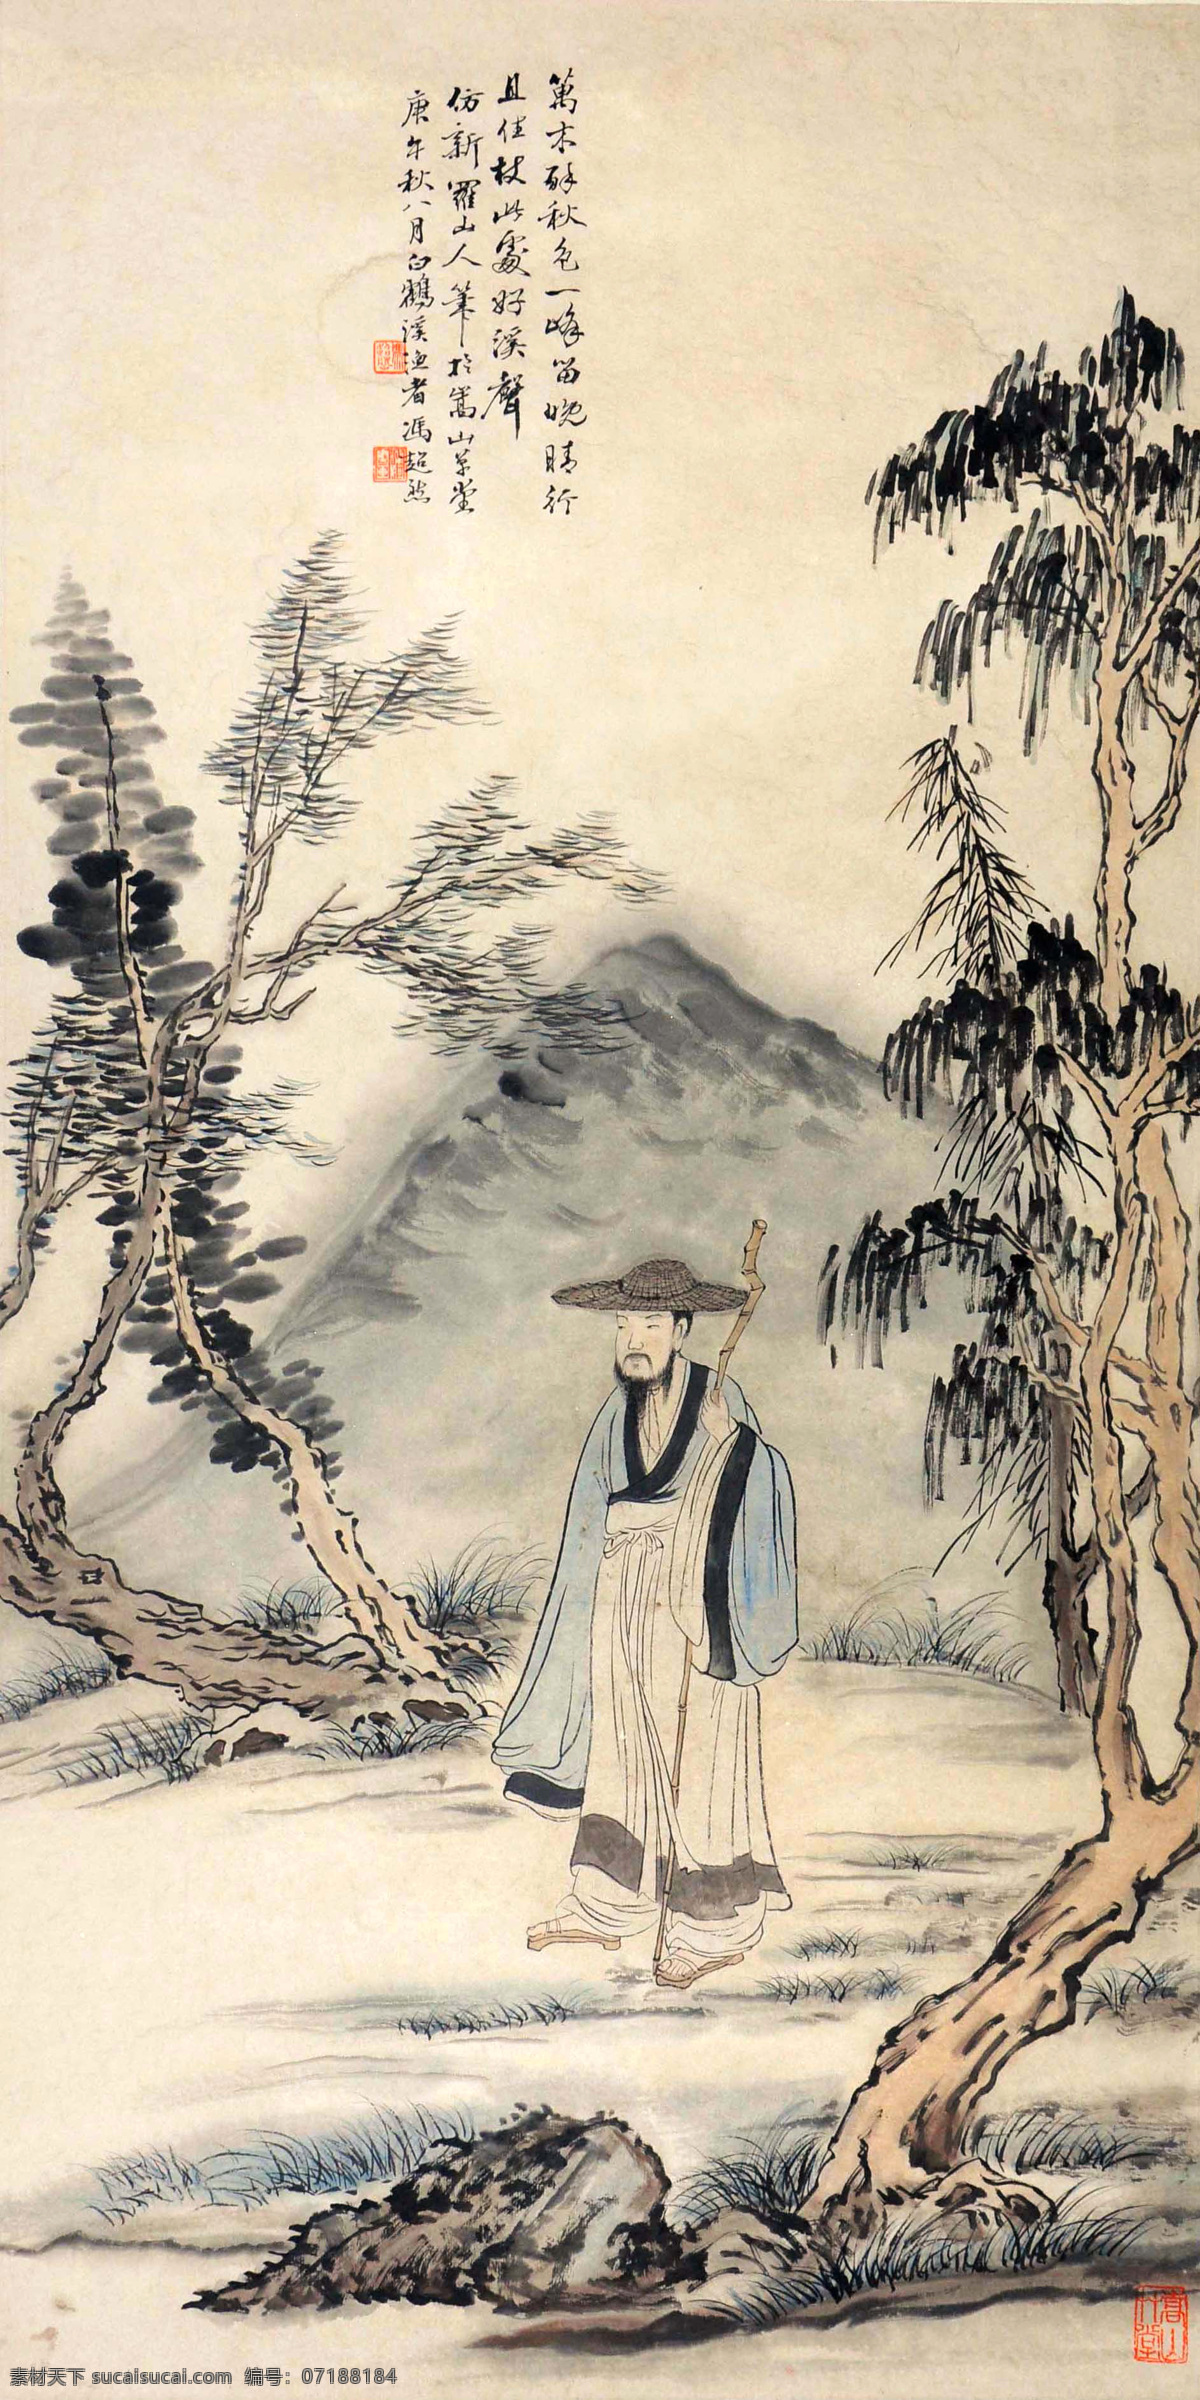 冯超然 策杖图 山水 人物 国画 中国画 传统画 名家 绘画 文化艺术 绘画书法